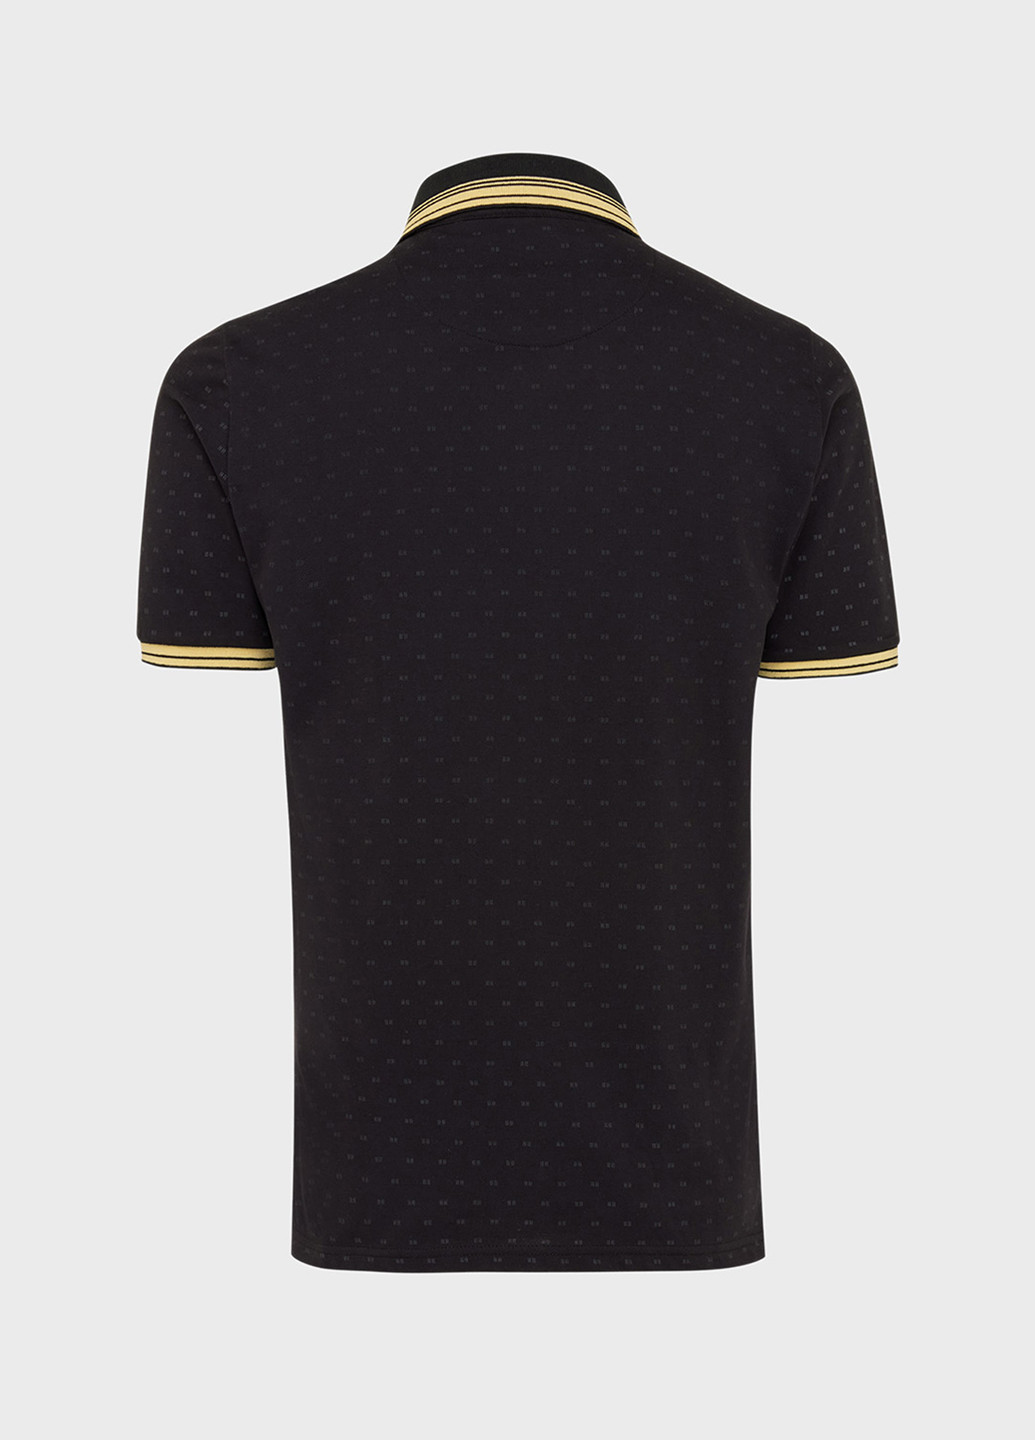 Черная футболка-поло для мужчин Mexx с абстрактным узором